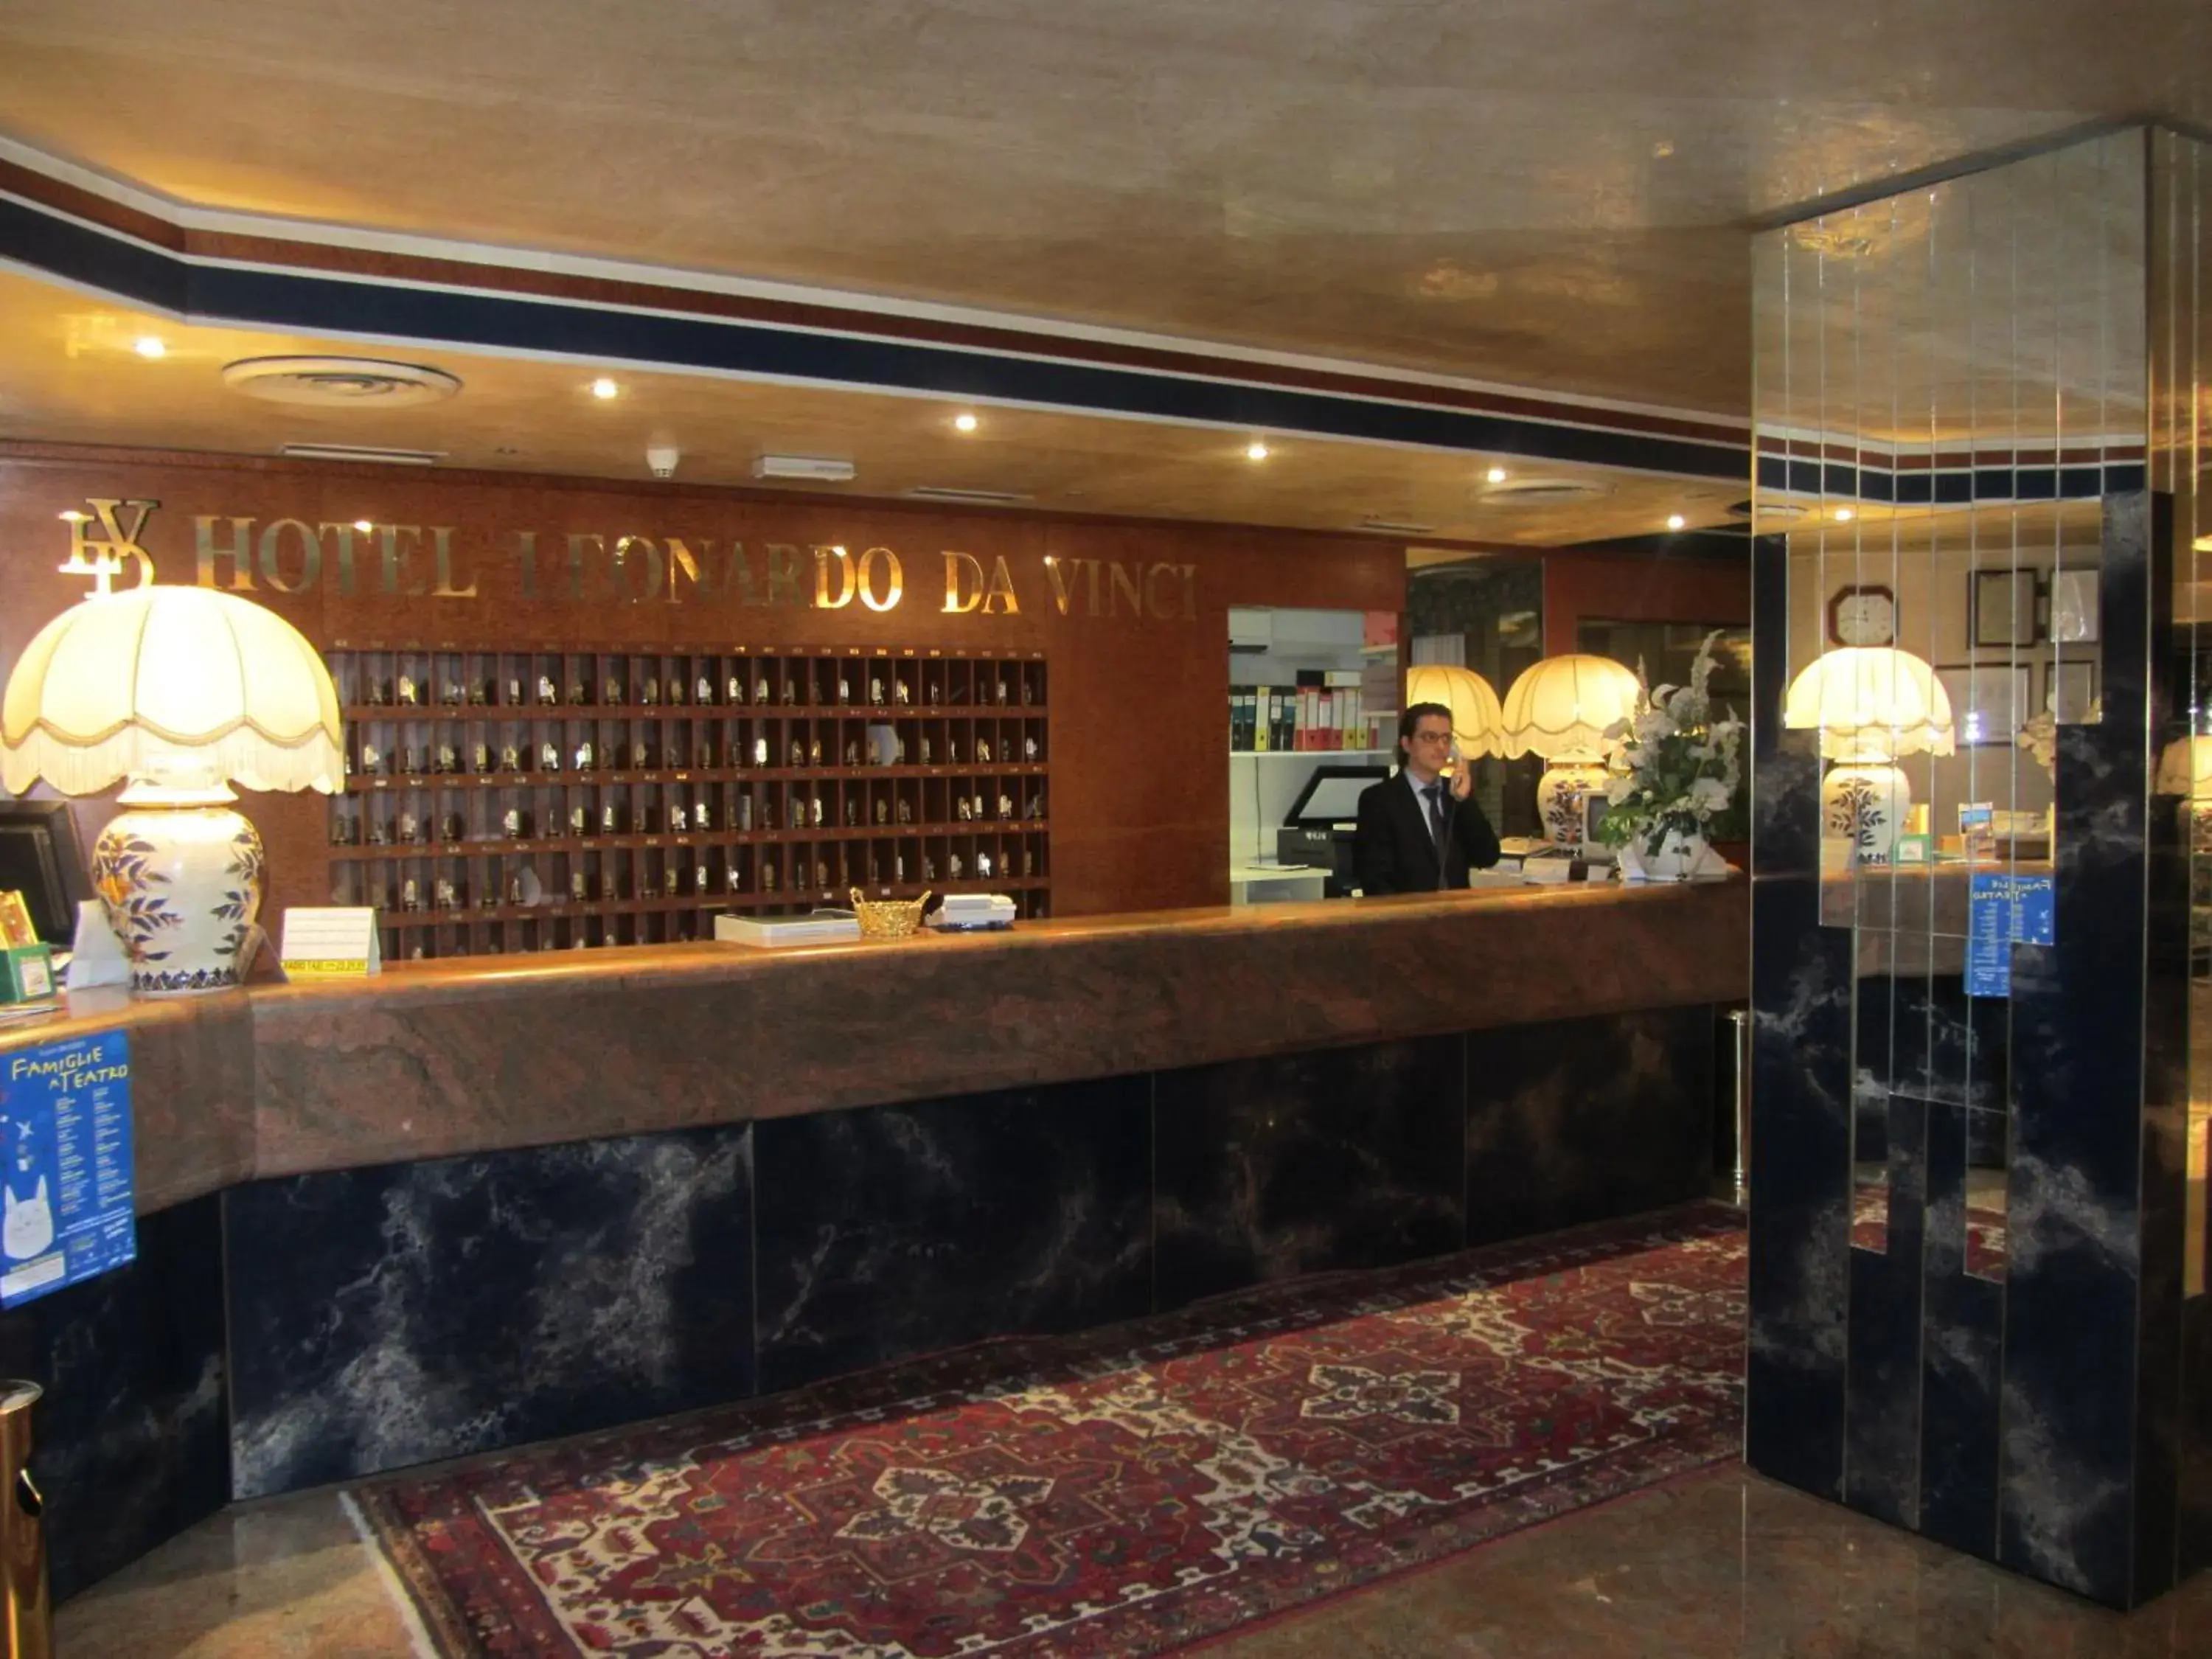 Lobby or reception, Lobby/Reception in Hotel Leonardo Da Vinci